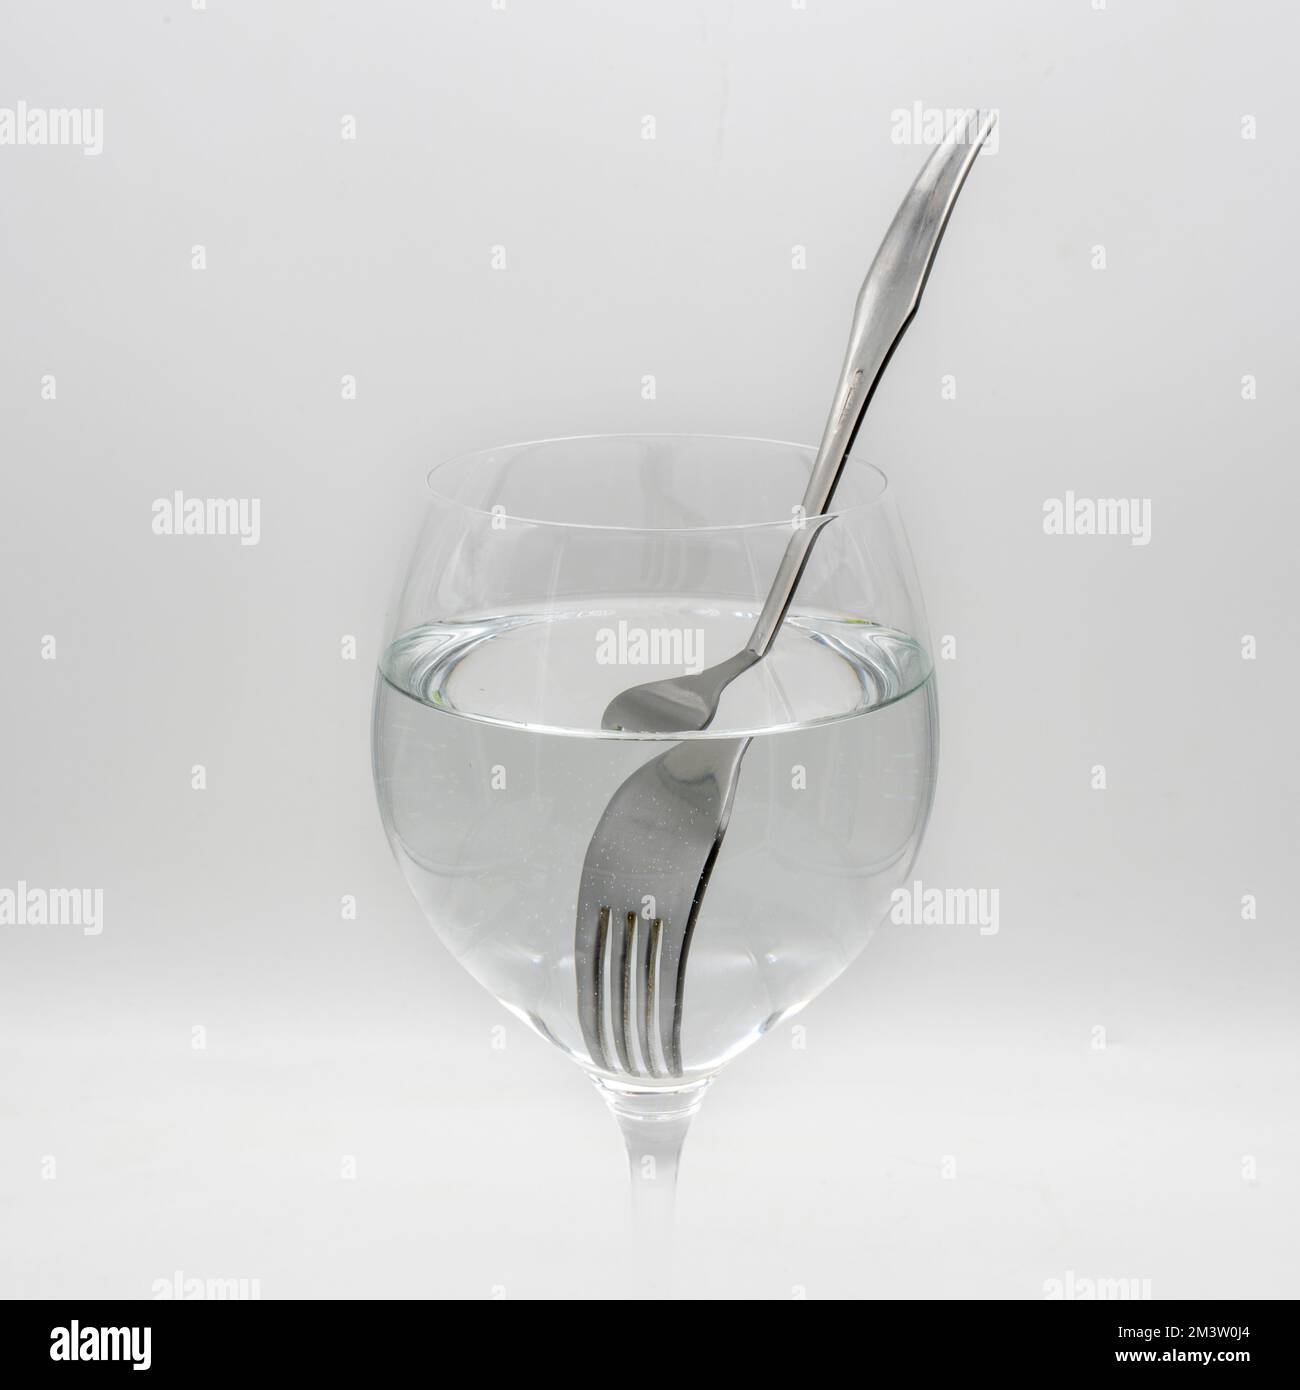 Vista de un tenedor distorsionado dentro de una vaso lleno de agua, demostrando la refracción de la luz Stock Photo